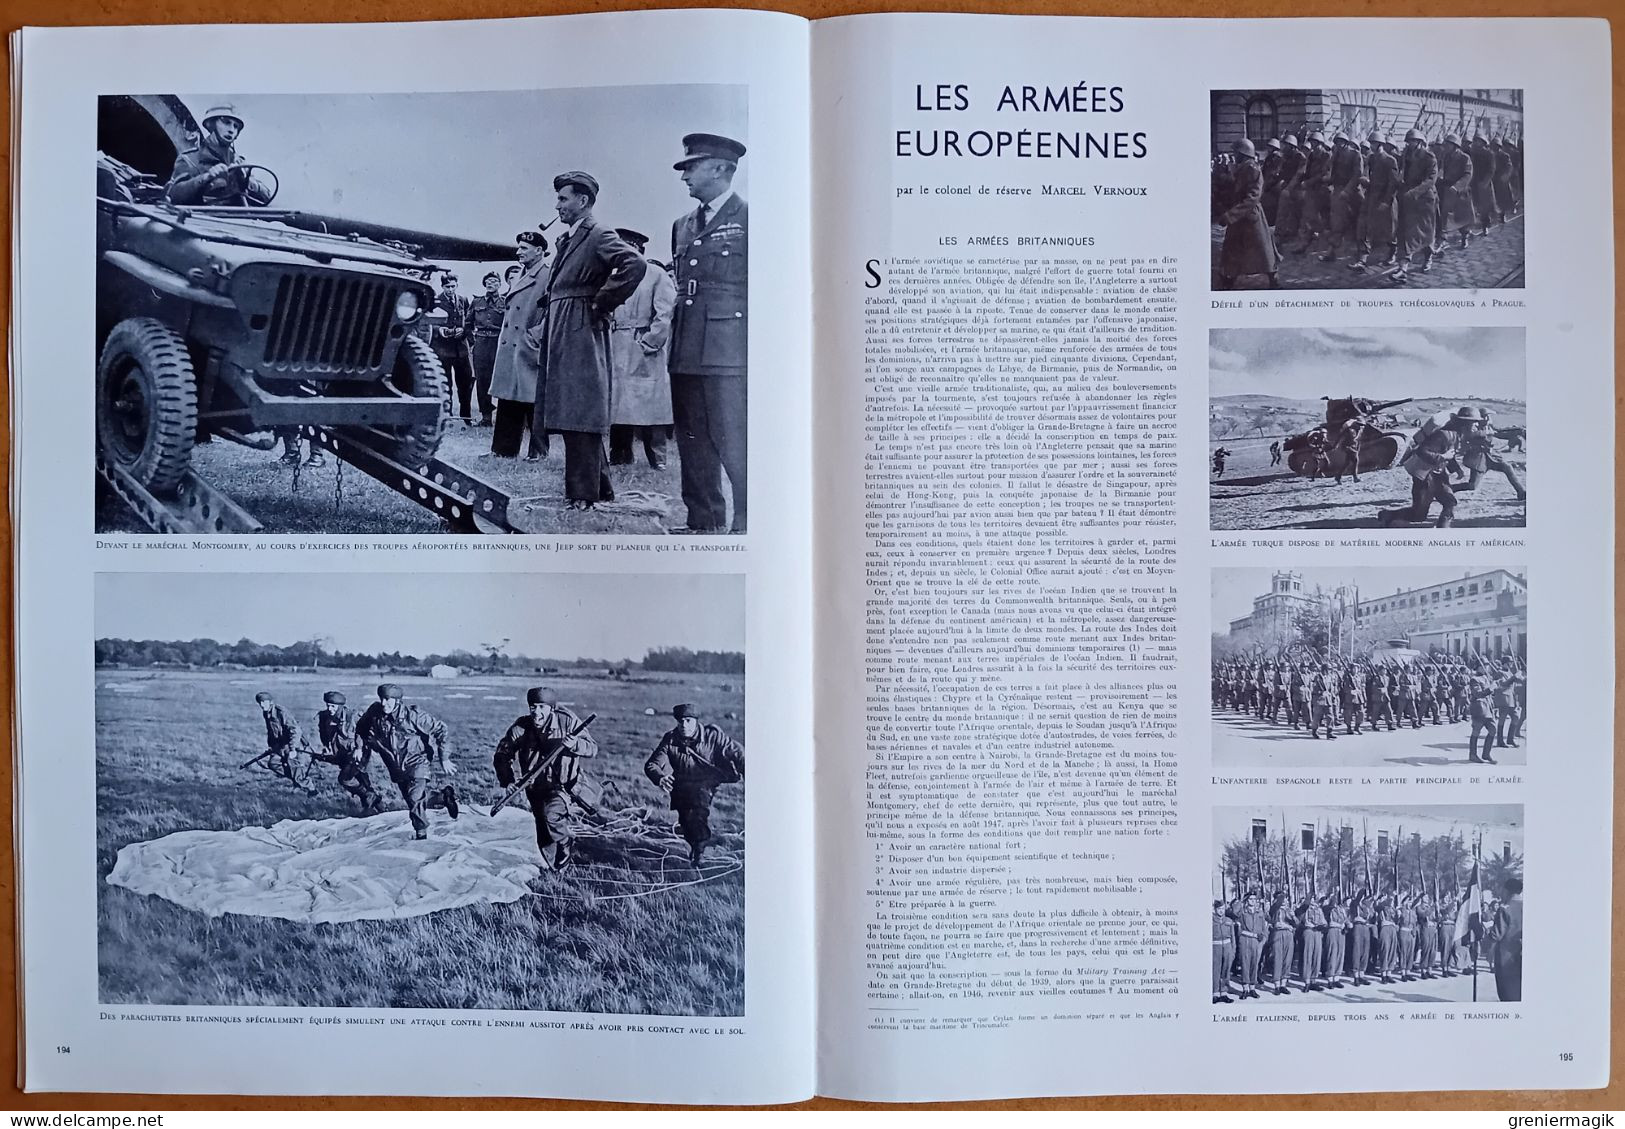 France Illustration N°151 21/08/1948 Clôture J.O. Wembley/Northrop XP-79/Guadeloupe/Toulon/Armes de chasse/Triouzoune